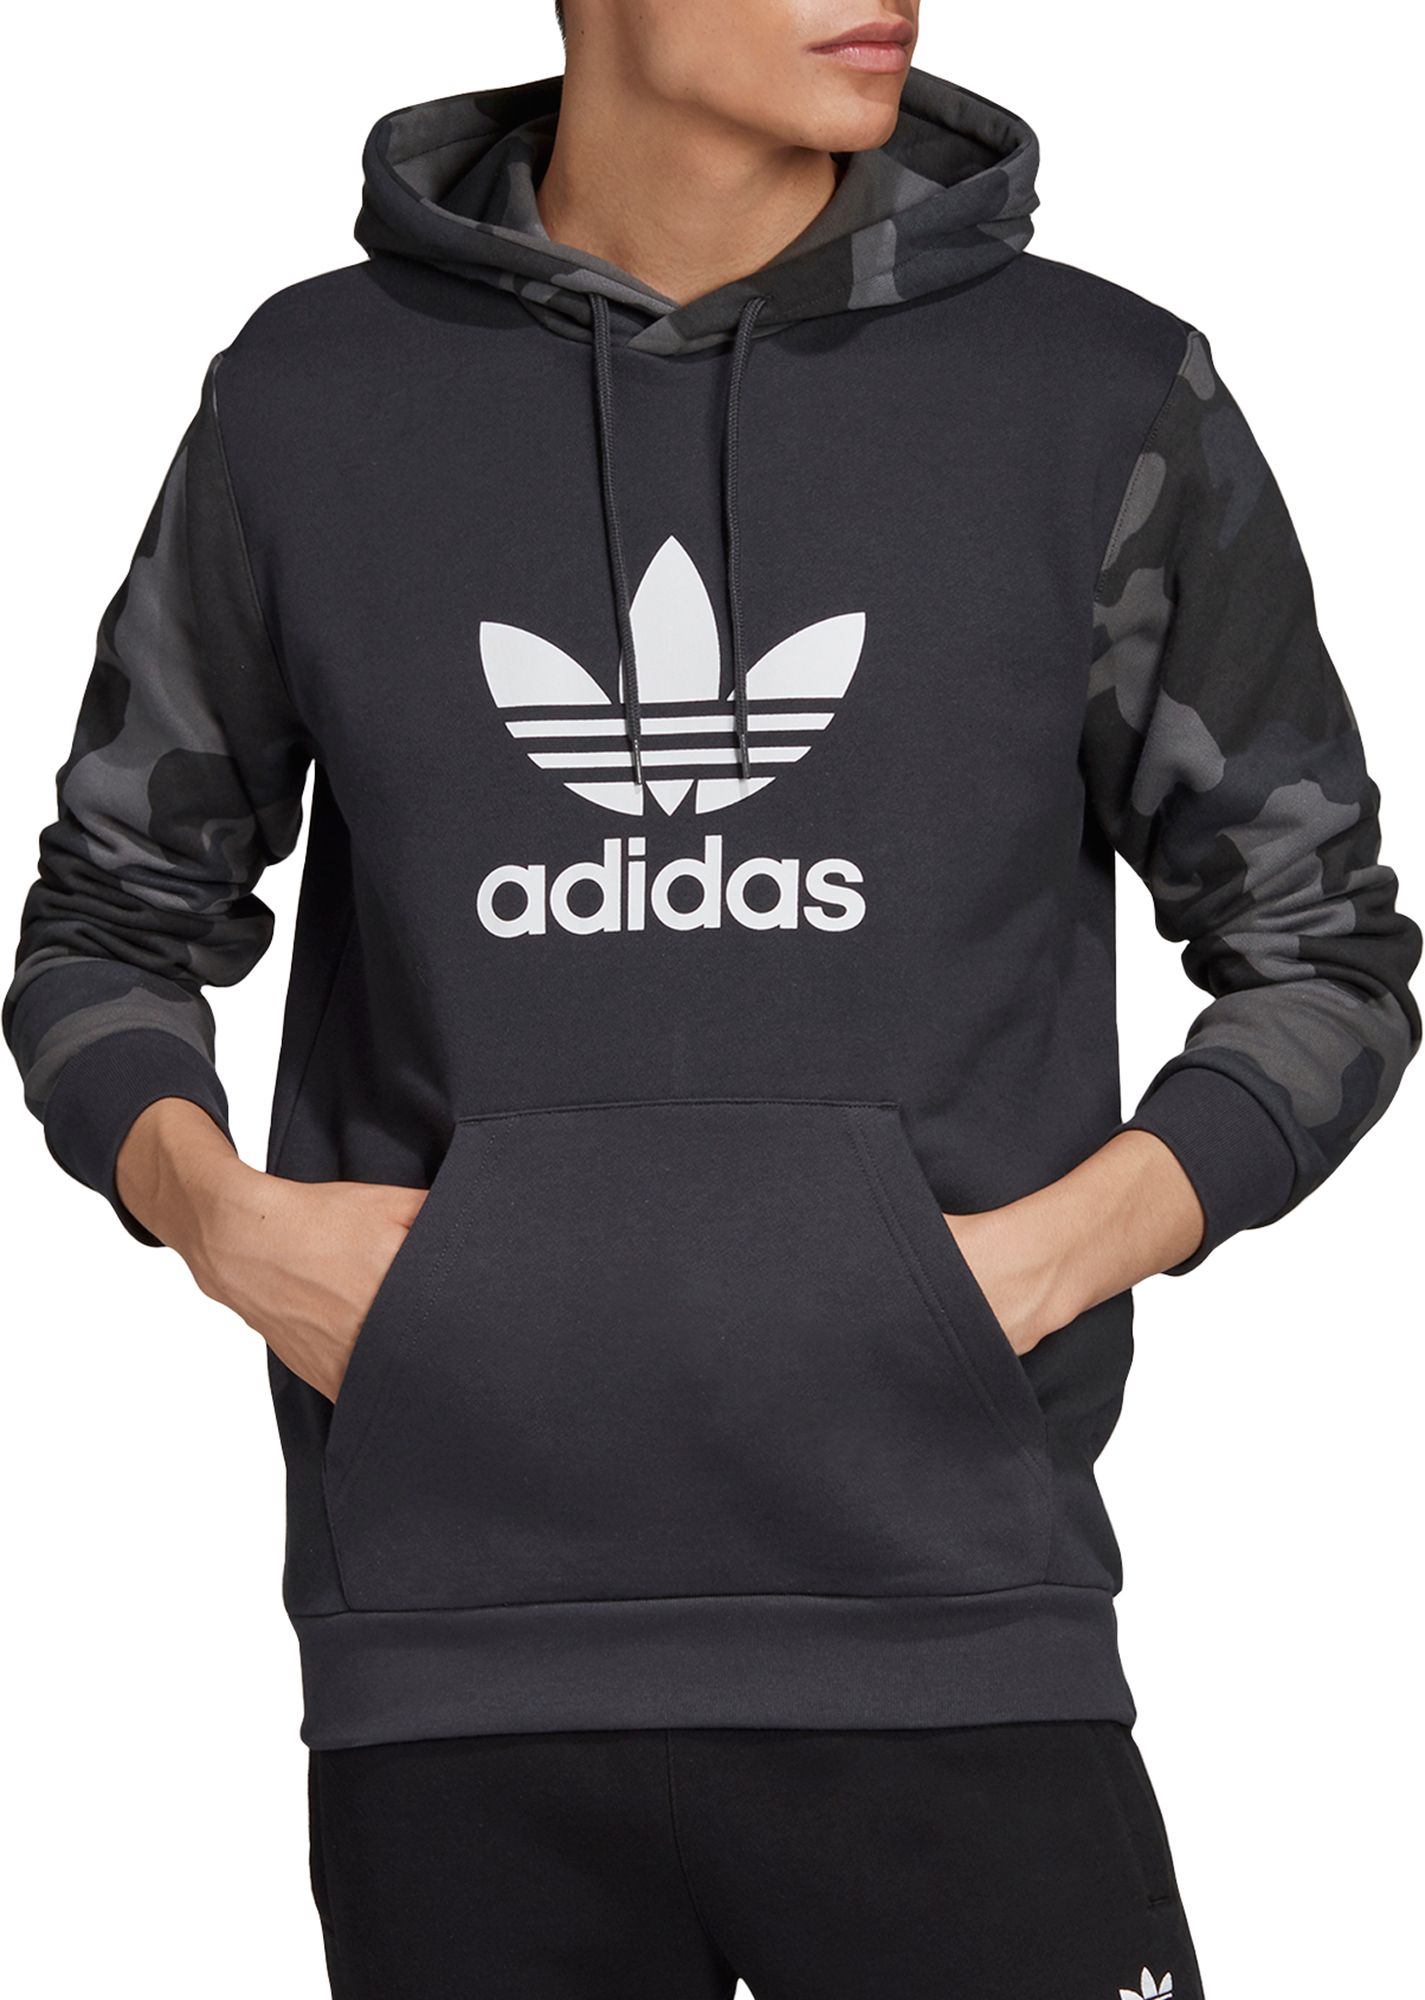 dicks sporting goods adidas hoodie